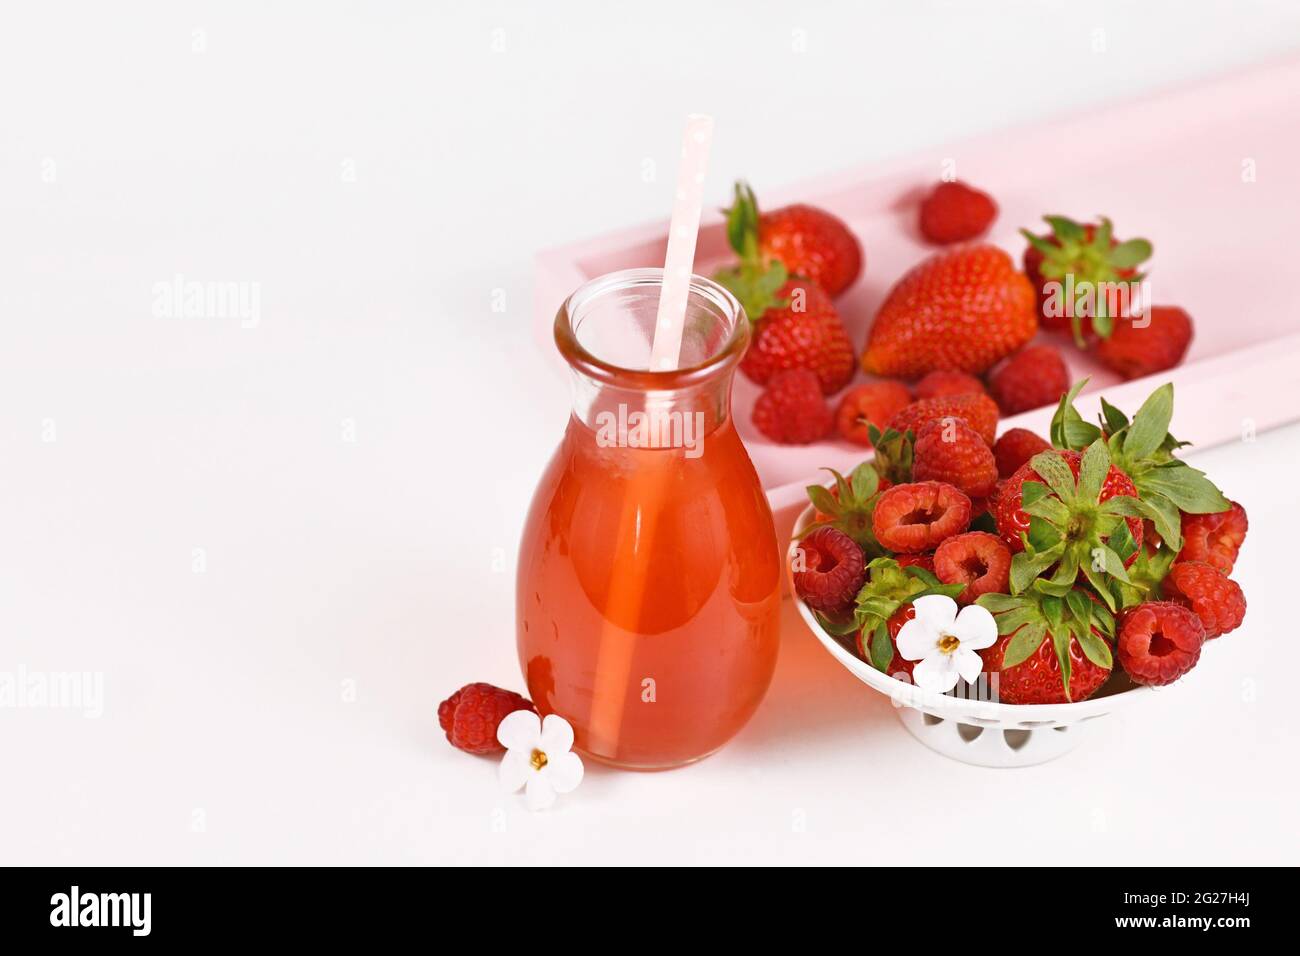 Limonade aux fraises rouges et aux framboises dans un pot entouré de baies Banque D'Images